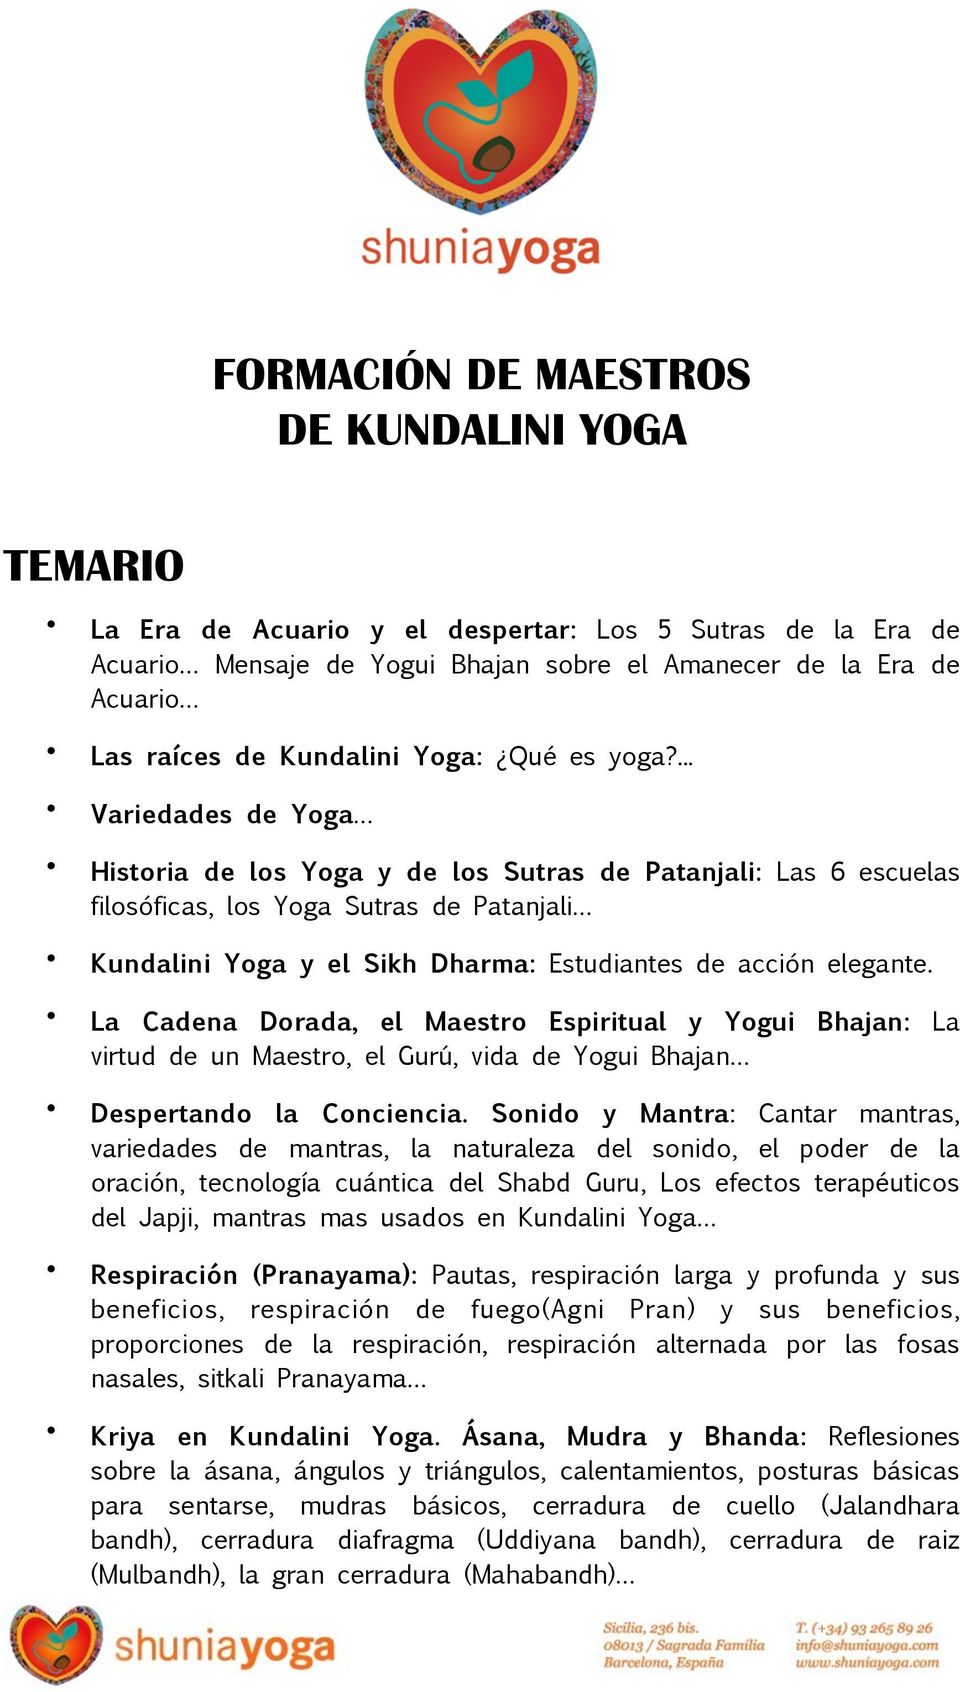 ... Variedades de Yoga Historia de los Yoga y de los Sutras de Patanjali: Las 6 escuelas filosóficas, los Yoga Sutras de Patanjali Kundalini Yoga y el Sikh Dharma: Estudiantes de acción elegante.